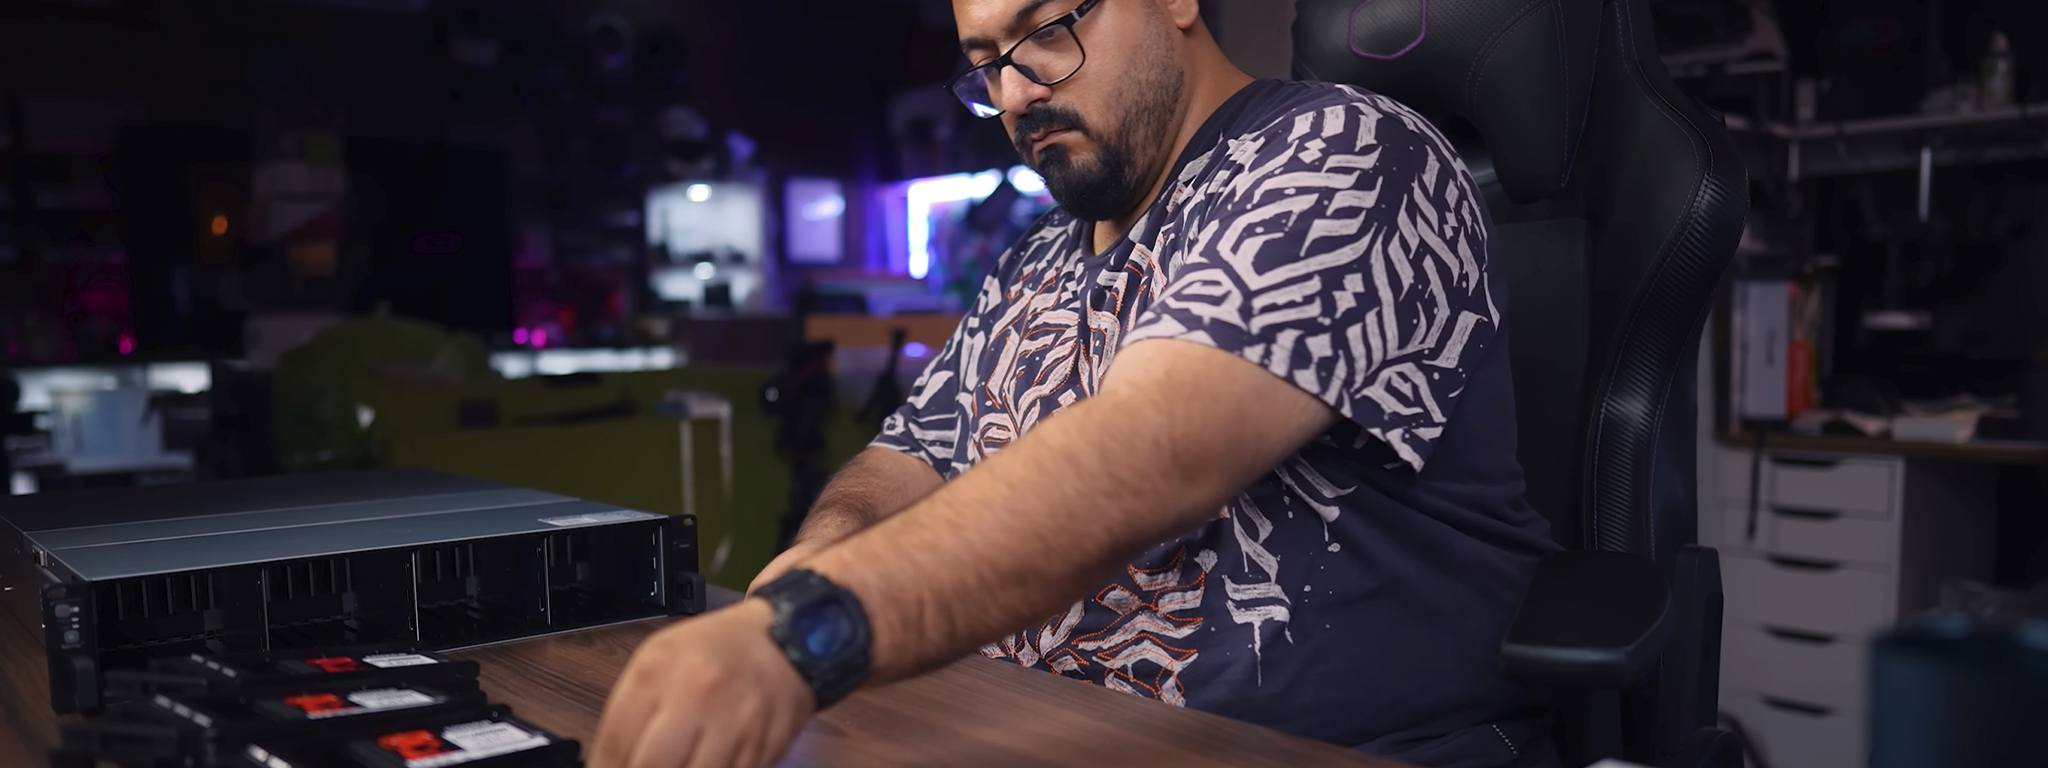 Salah Hamed – influenciador da Android Basha – instalando SSDs DC600M em um rack de servidor em sua mesa